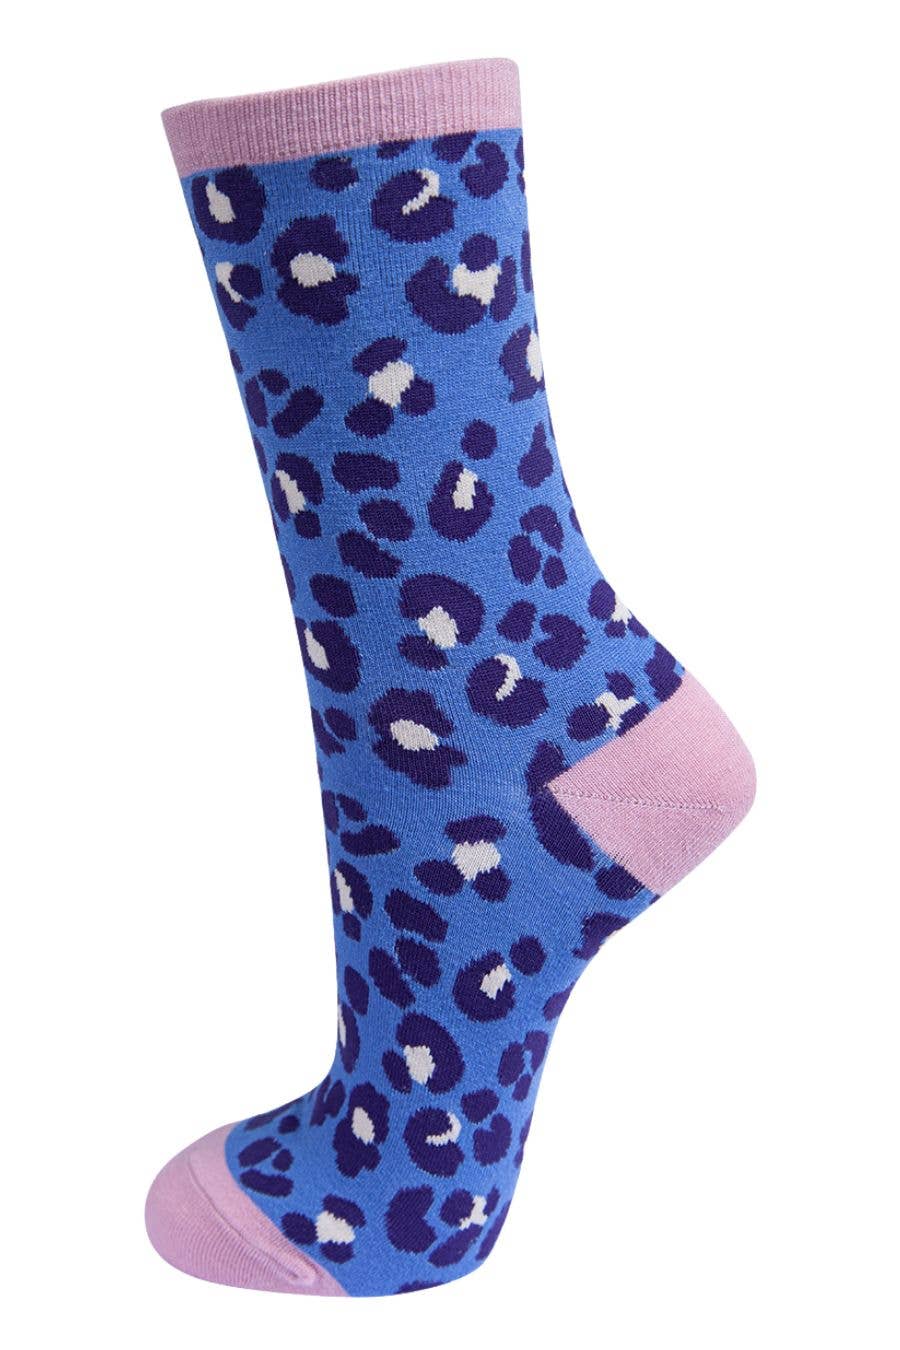 Sock Talk - Womens Bamboo Leopard Print Socks Ladies Animal Print Blue